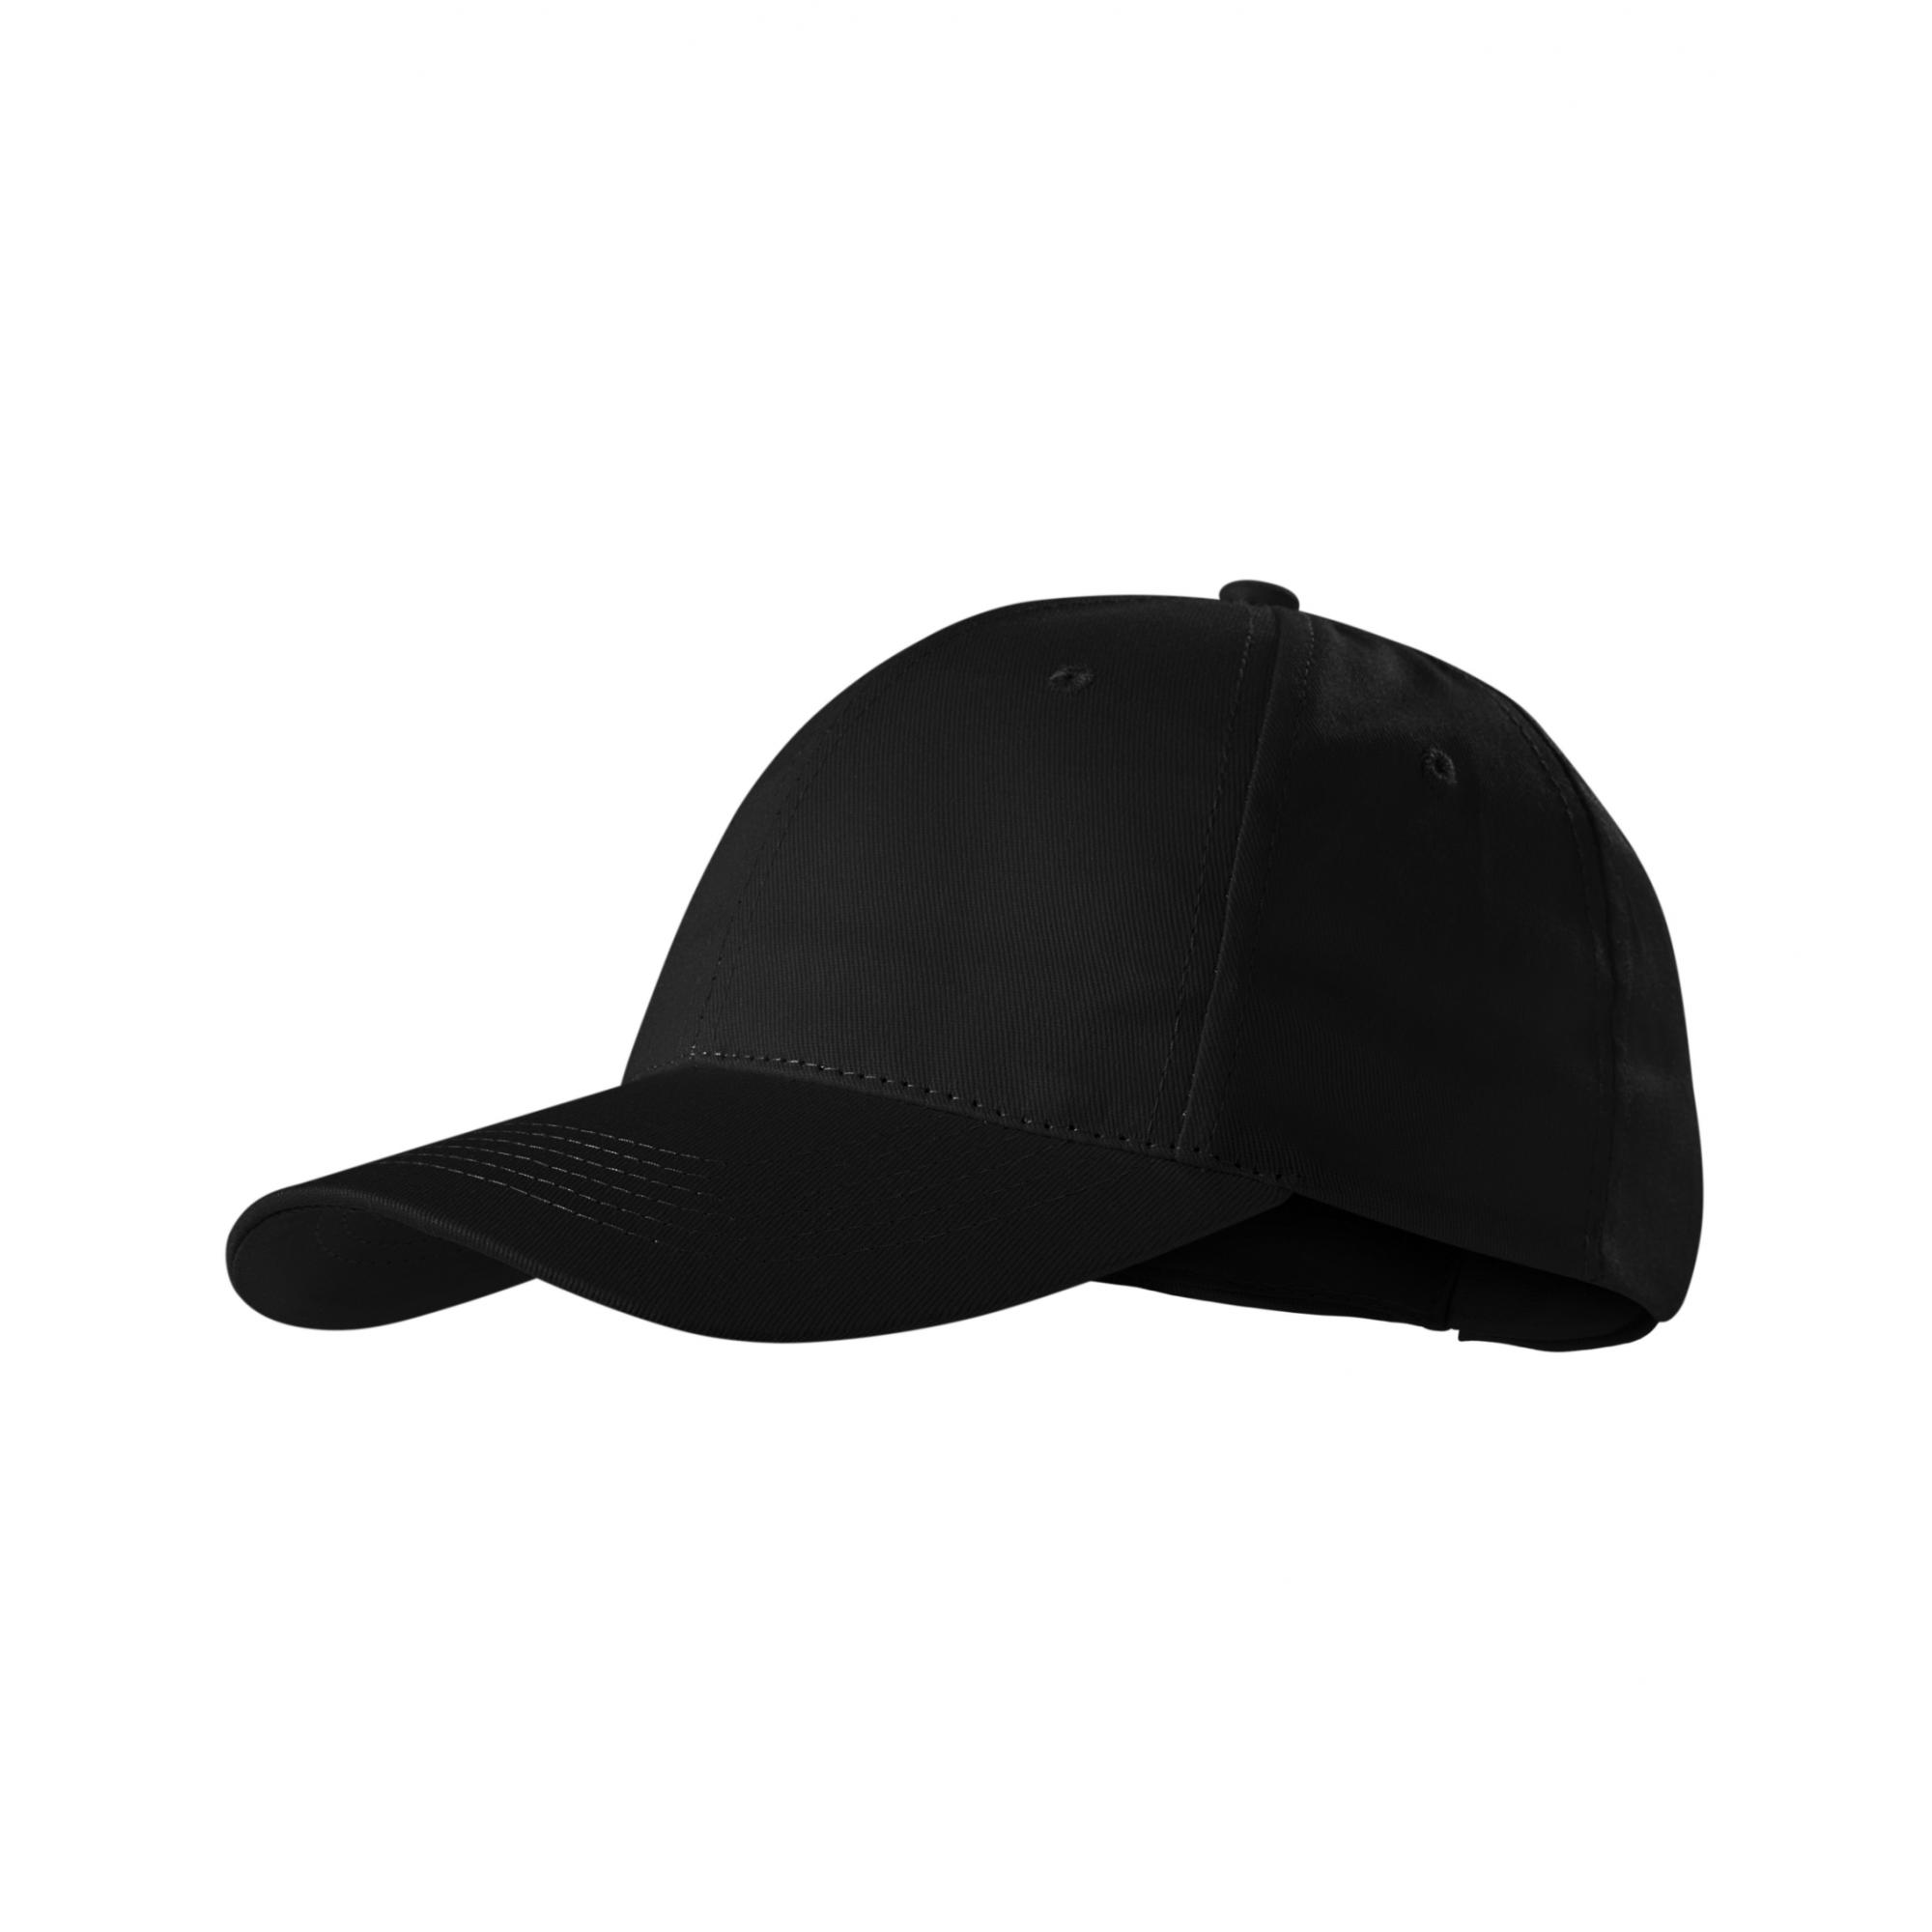 Şapcă unisex Sunshine P31 Negru Marime universala